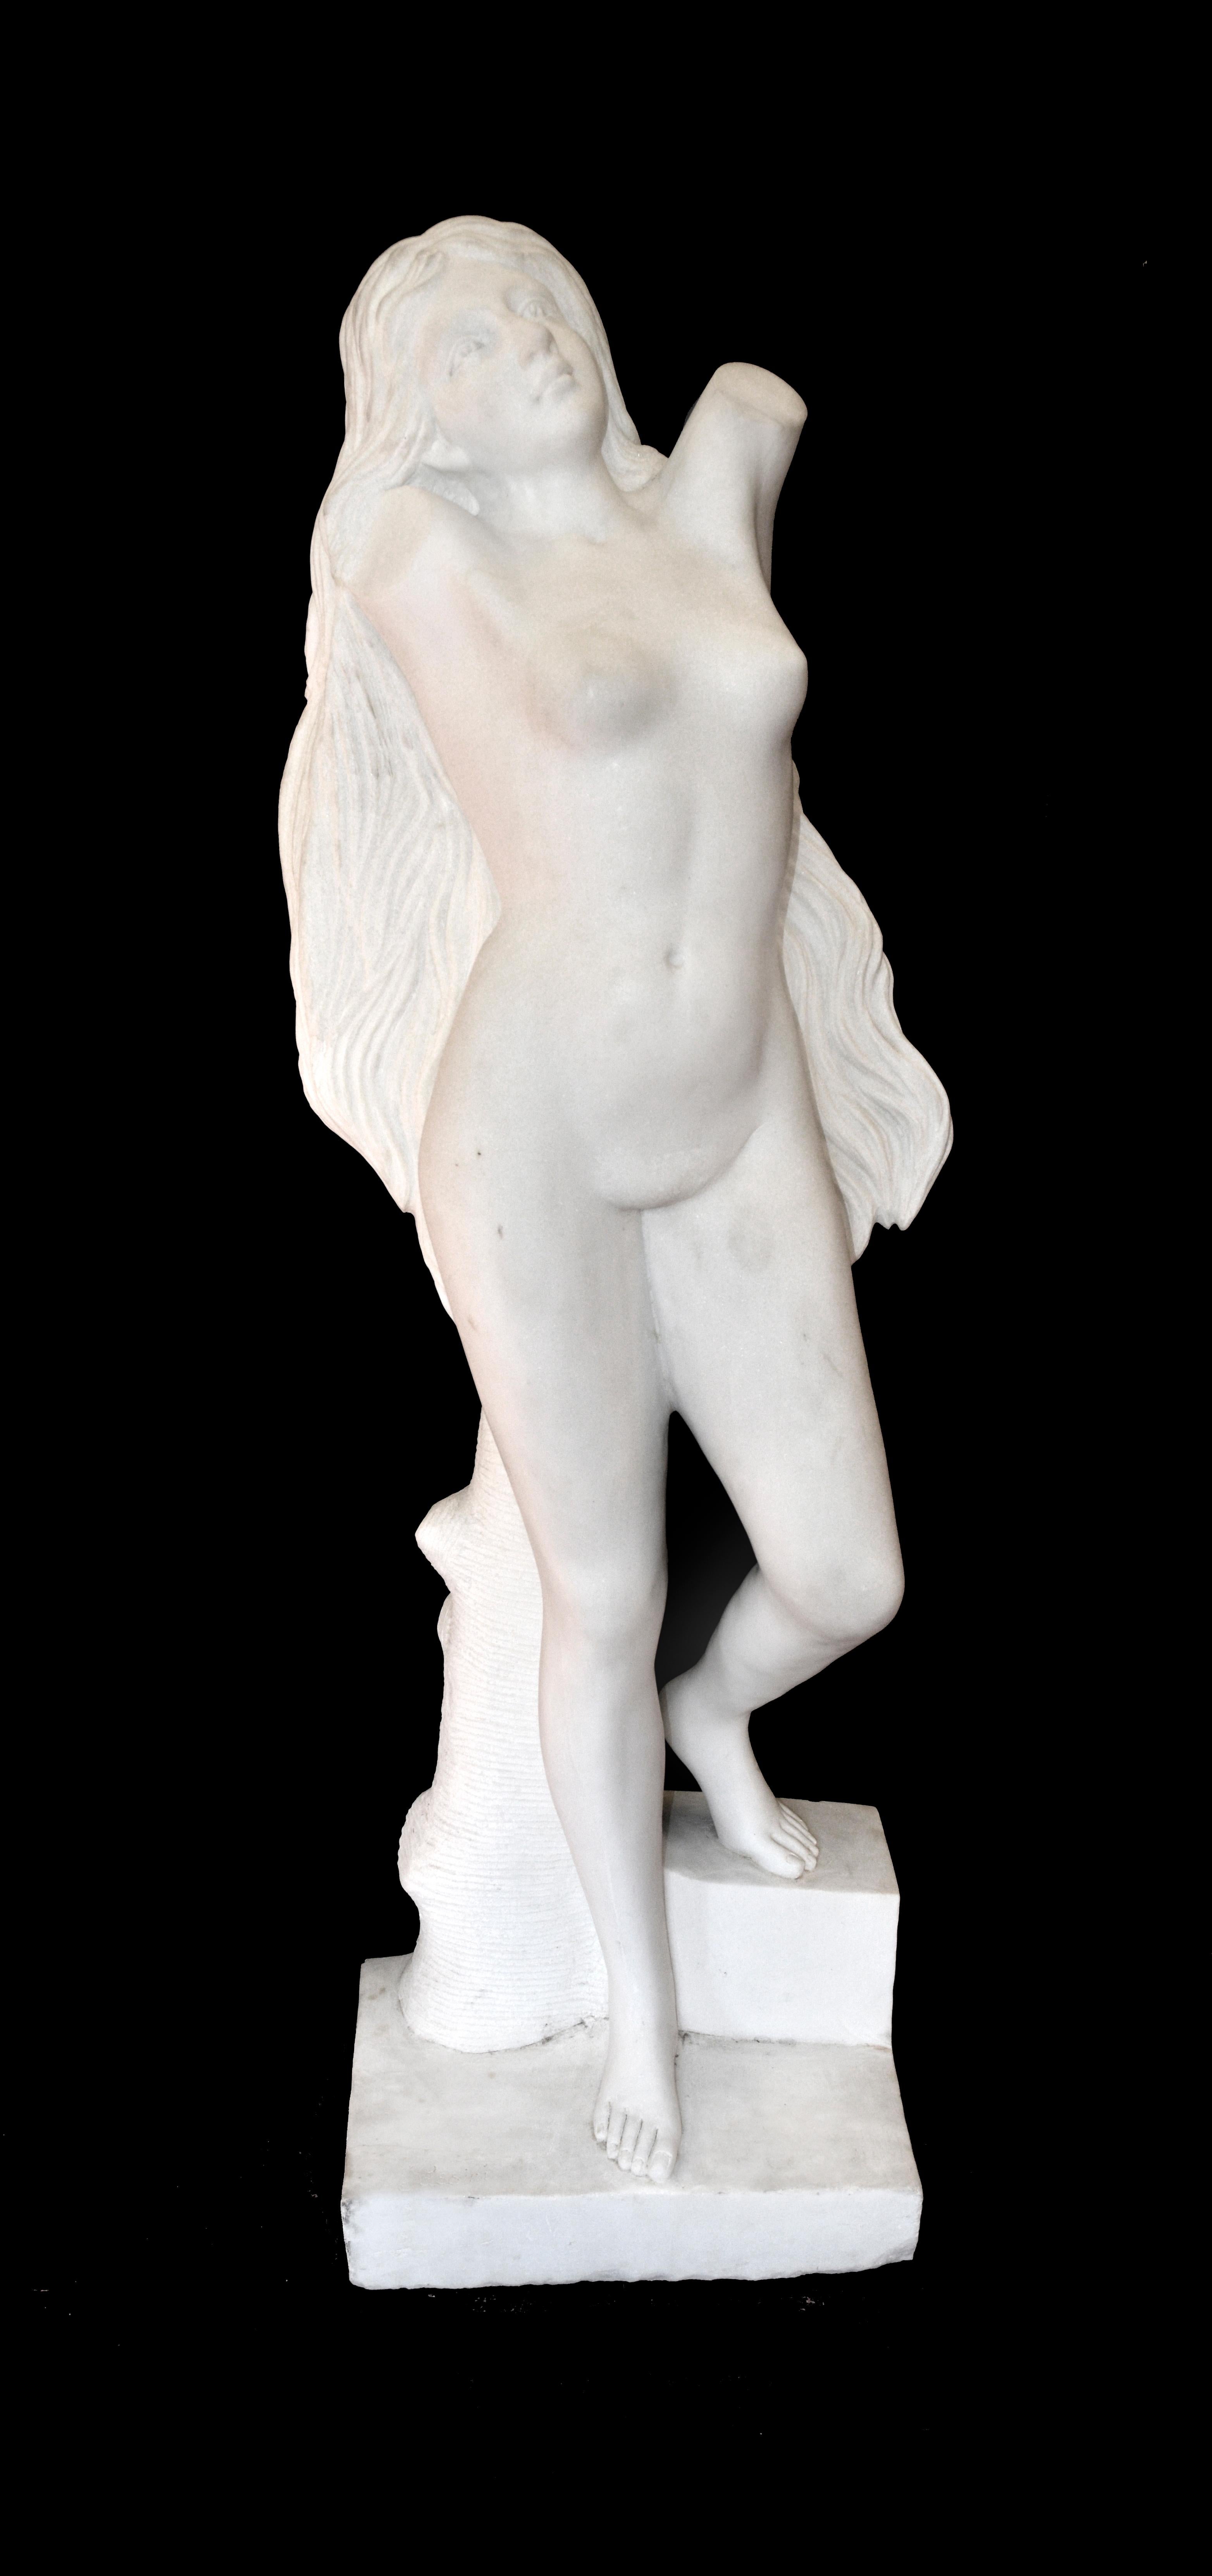 M Passini Figurative Sculpture - Venus Monumental Marble Statue Passini 